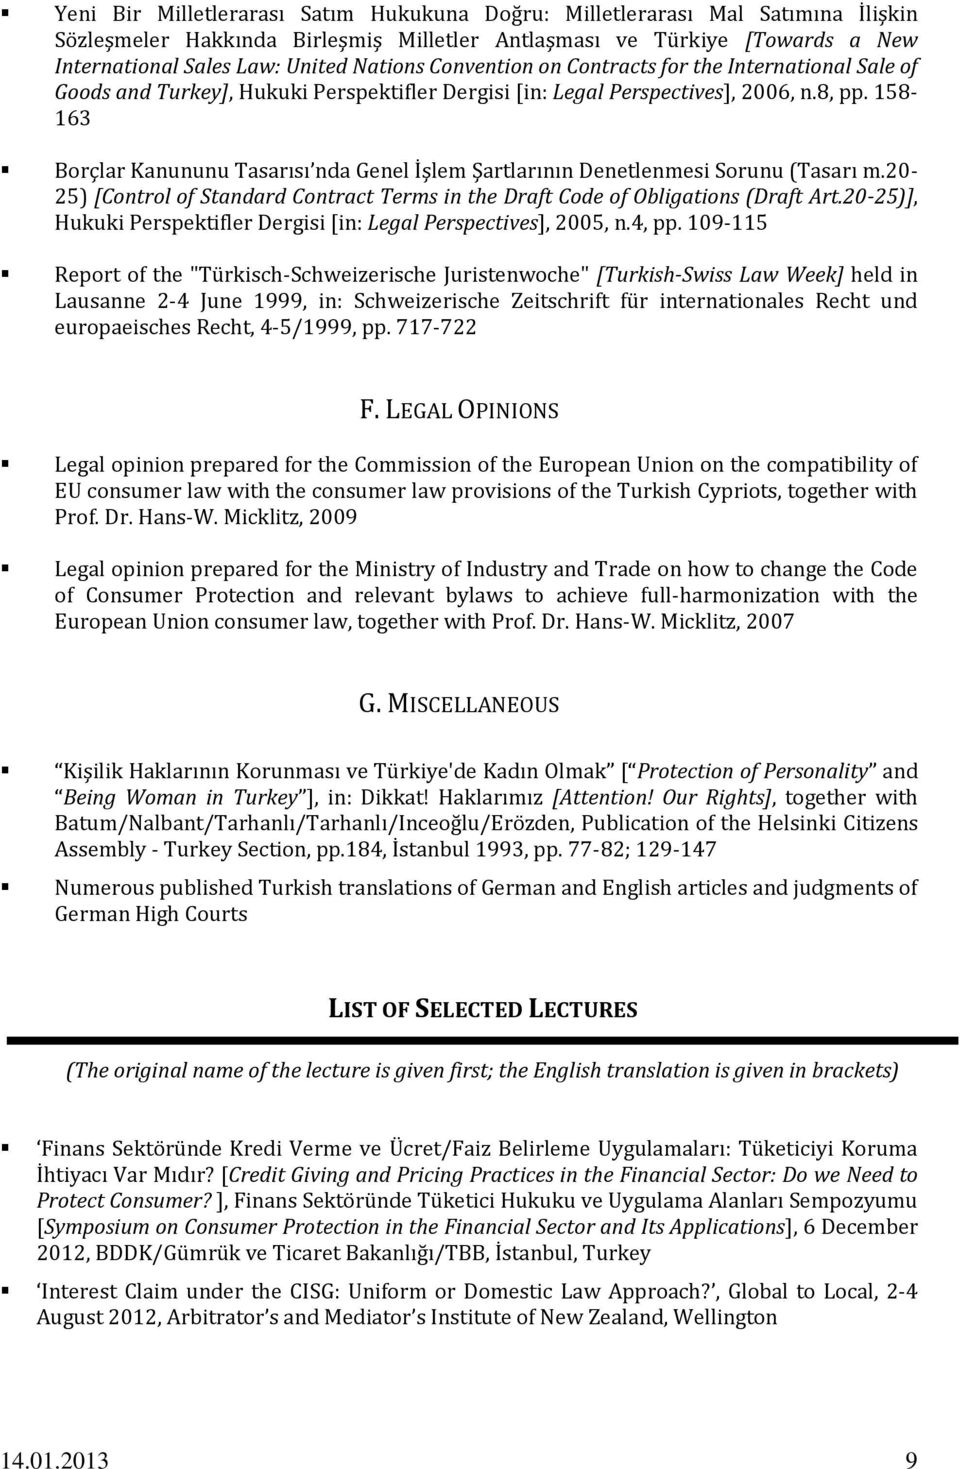 158-163 Borçlar Kanununu Tasarısı nda Genel İşlem Şartlarının Denetlenmesi Sorunu (Tasarı m.20-25) [Control of Standard Contract Terms in the Draft Code of Obligations (Draft Art.